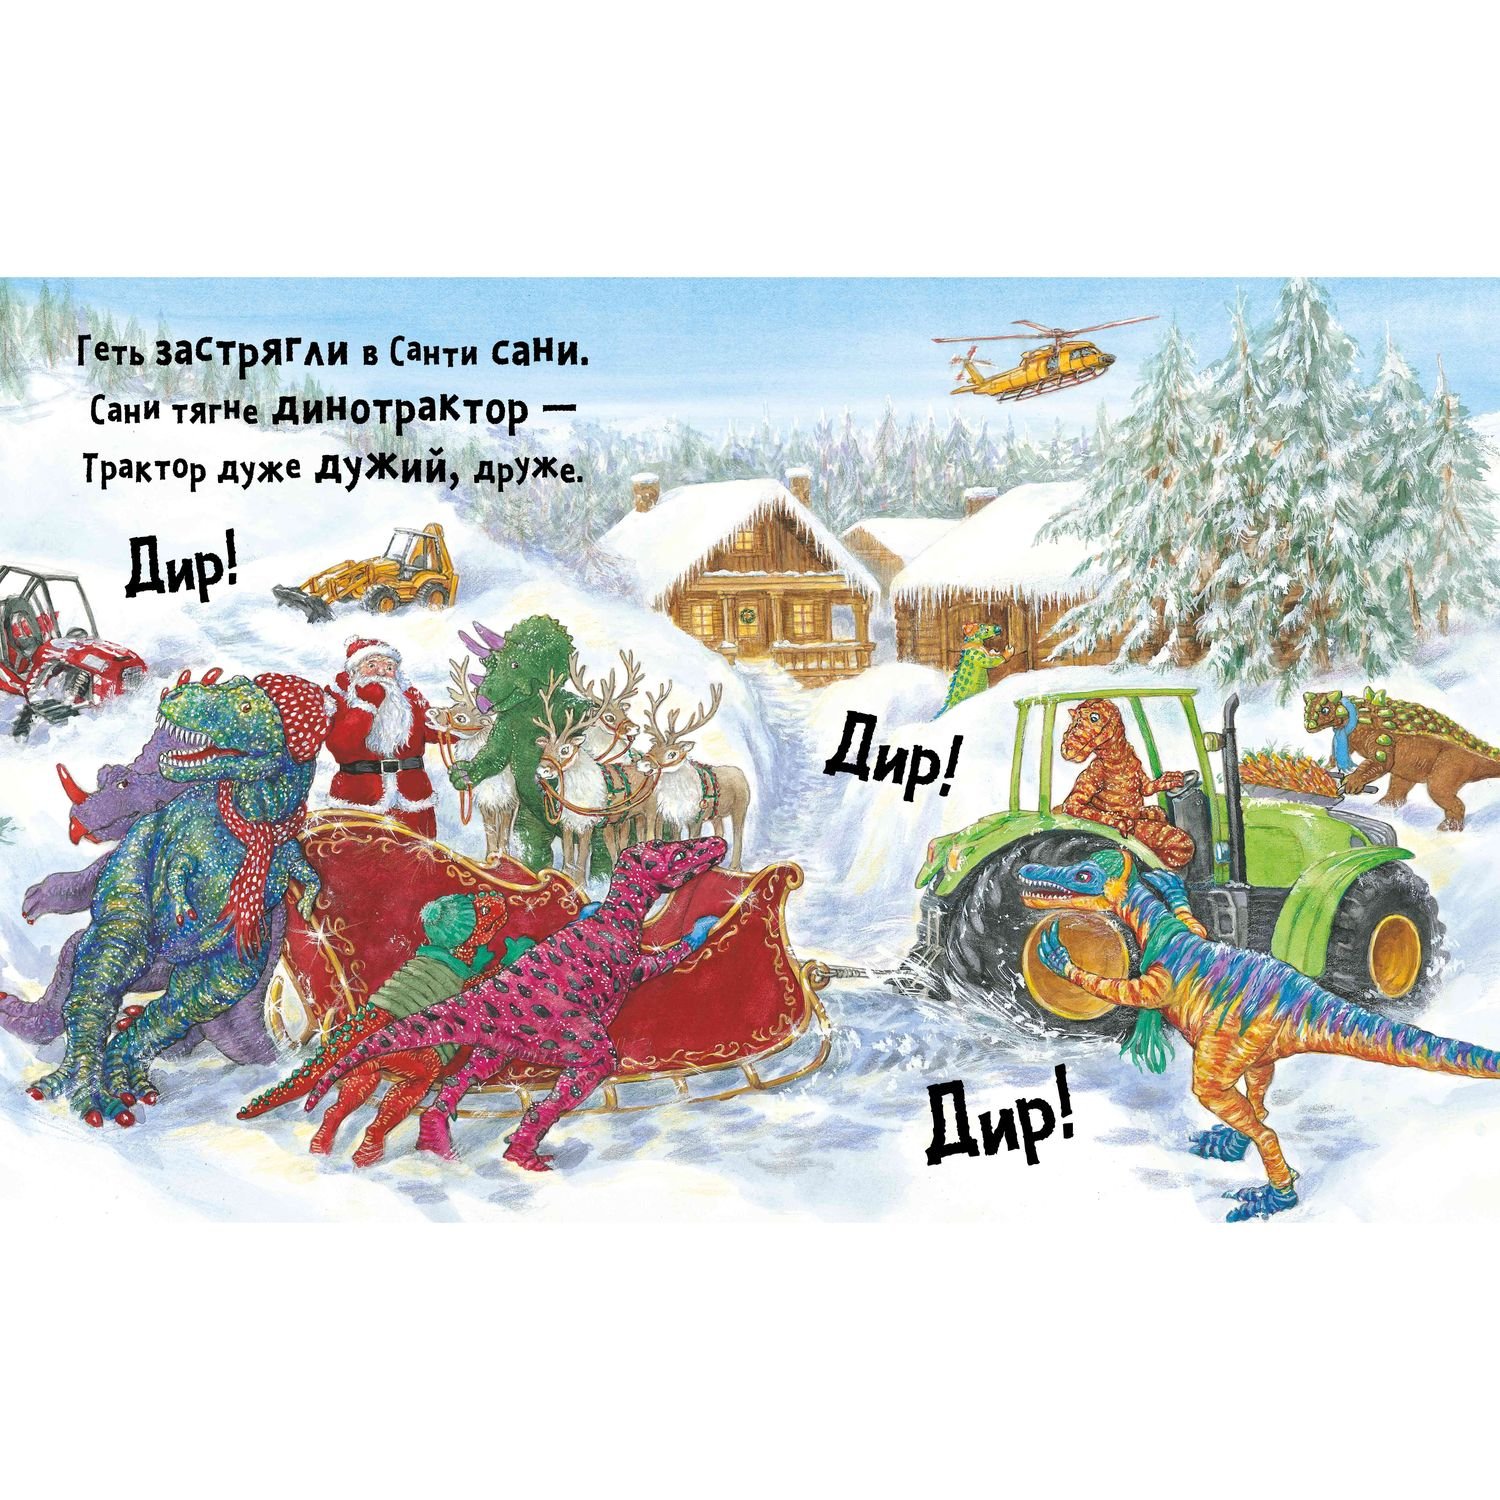 Дитяча книга Артбукс Динослужба рятує Різдво - Пенні Дейл (9786177940868) - фото 3